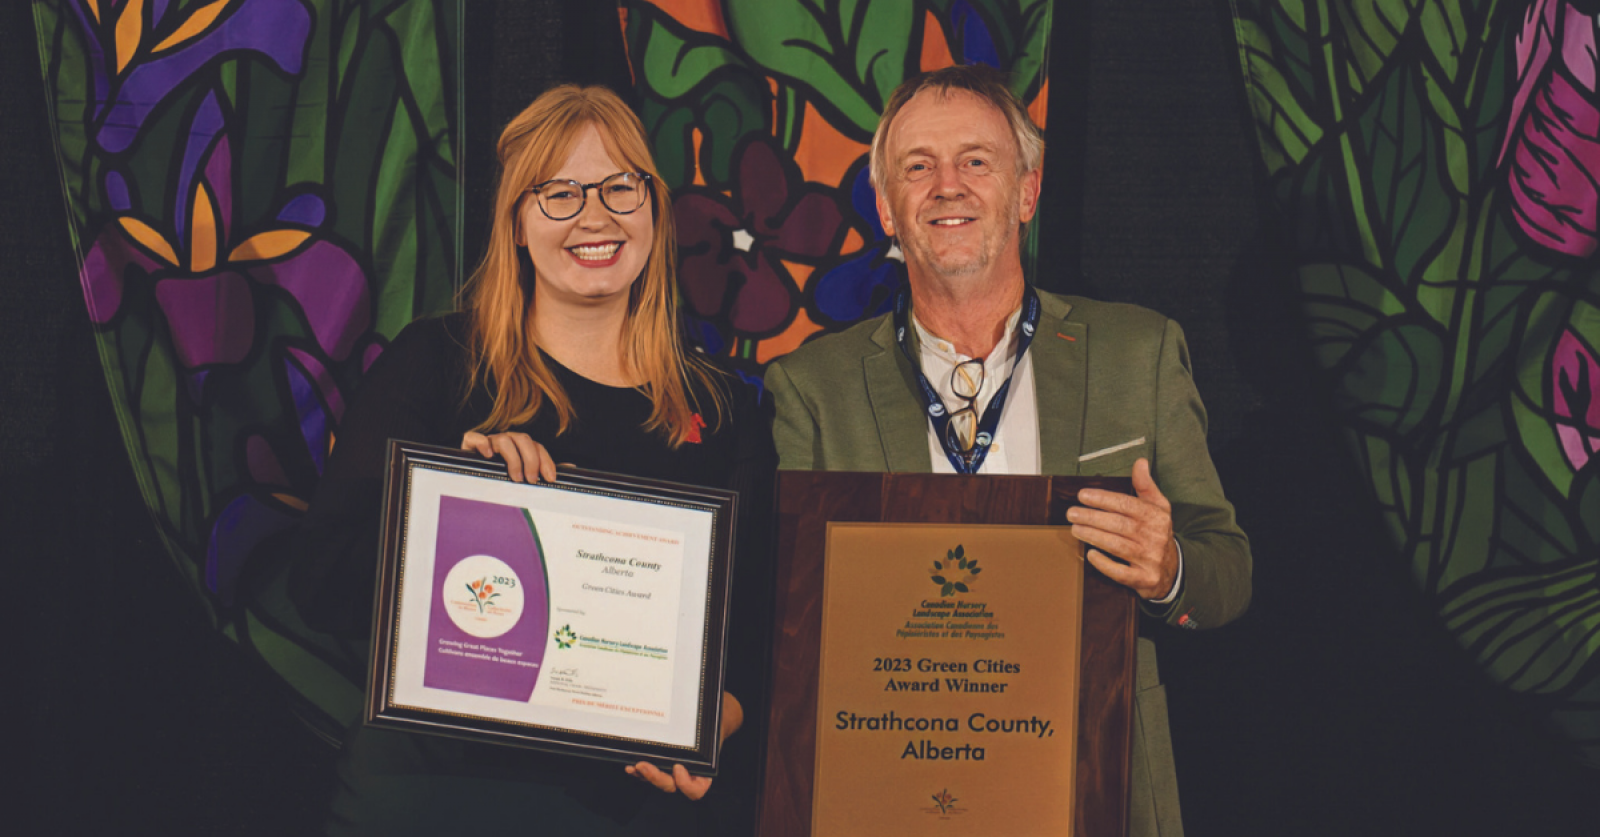 Strathcona County wins Green Cities Award at Wood Buffalo Symposium